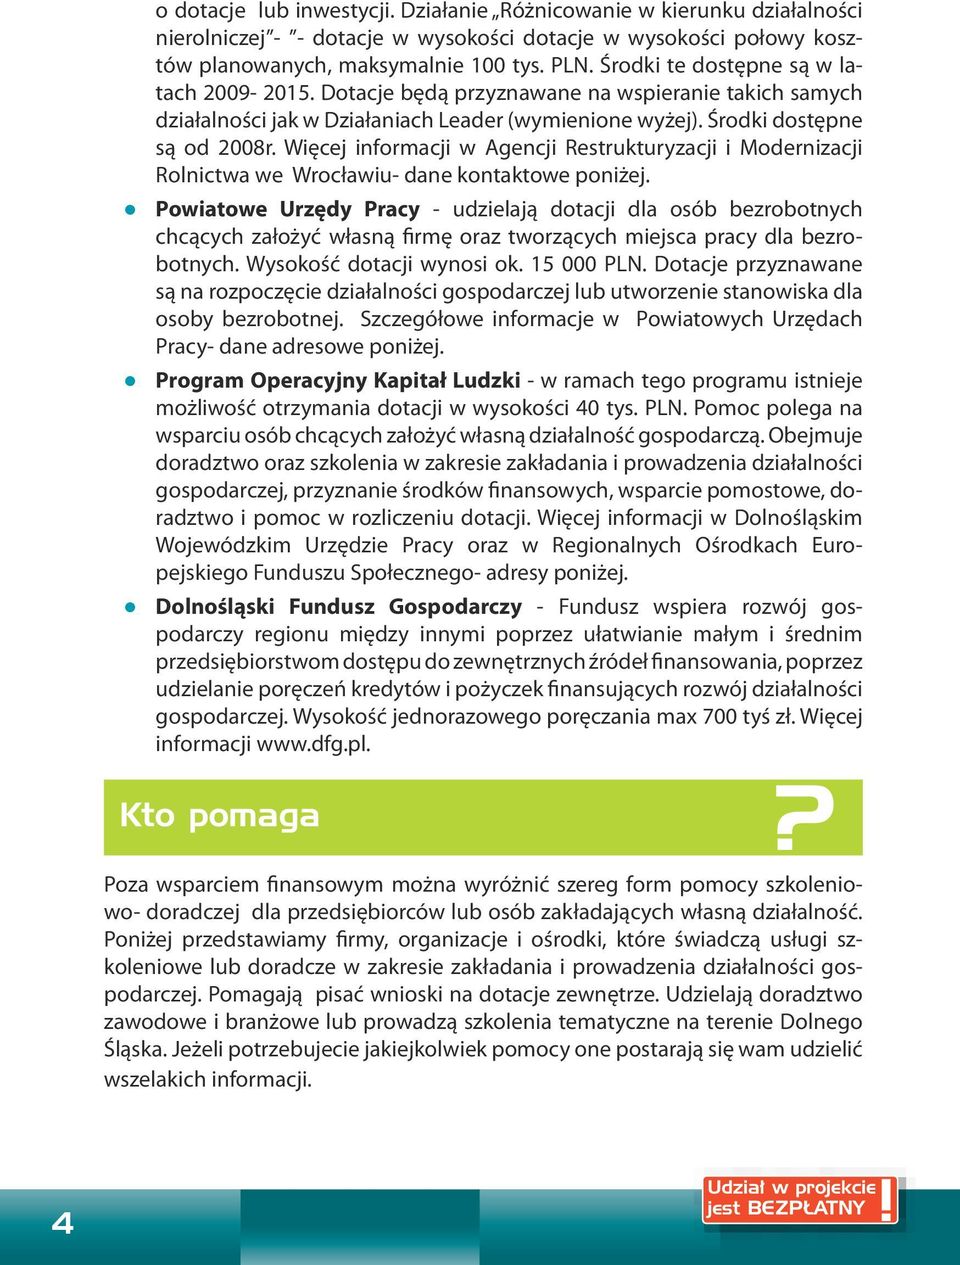 Więcej informacji w Agencji Restrukturyzacji i Modernizacji Rolnictwa we Wrocławiu- dane kontaktowe poniżej.